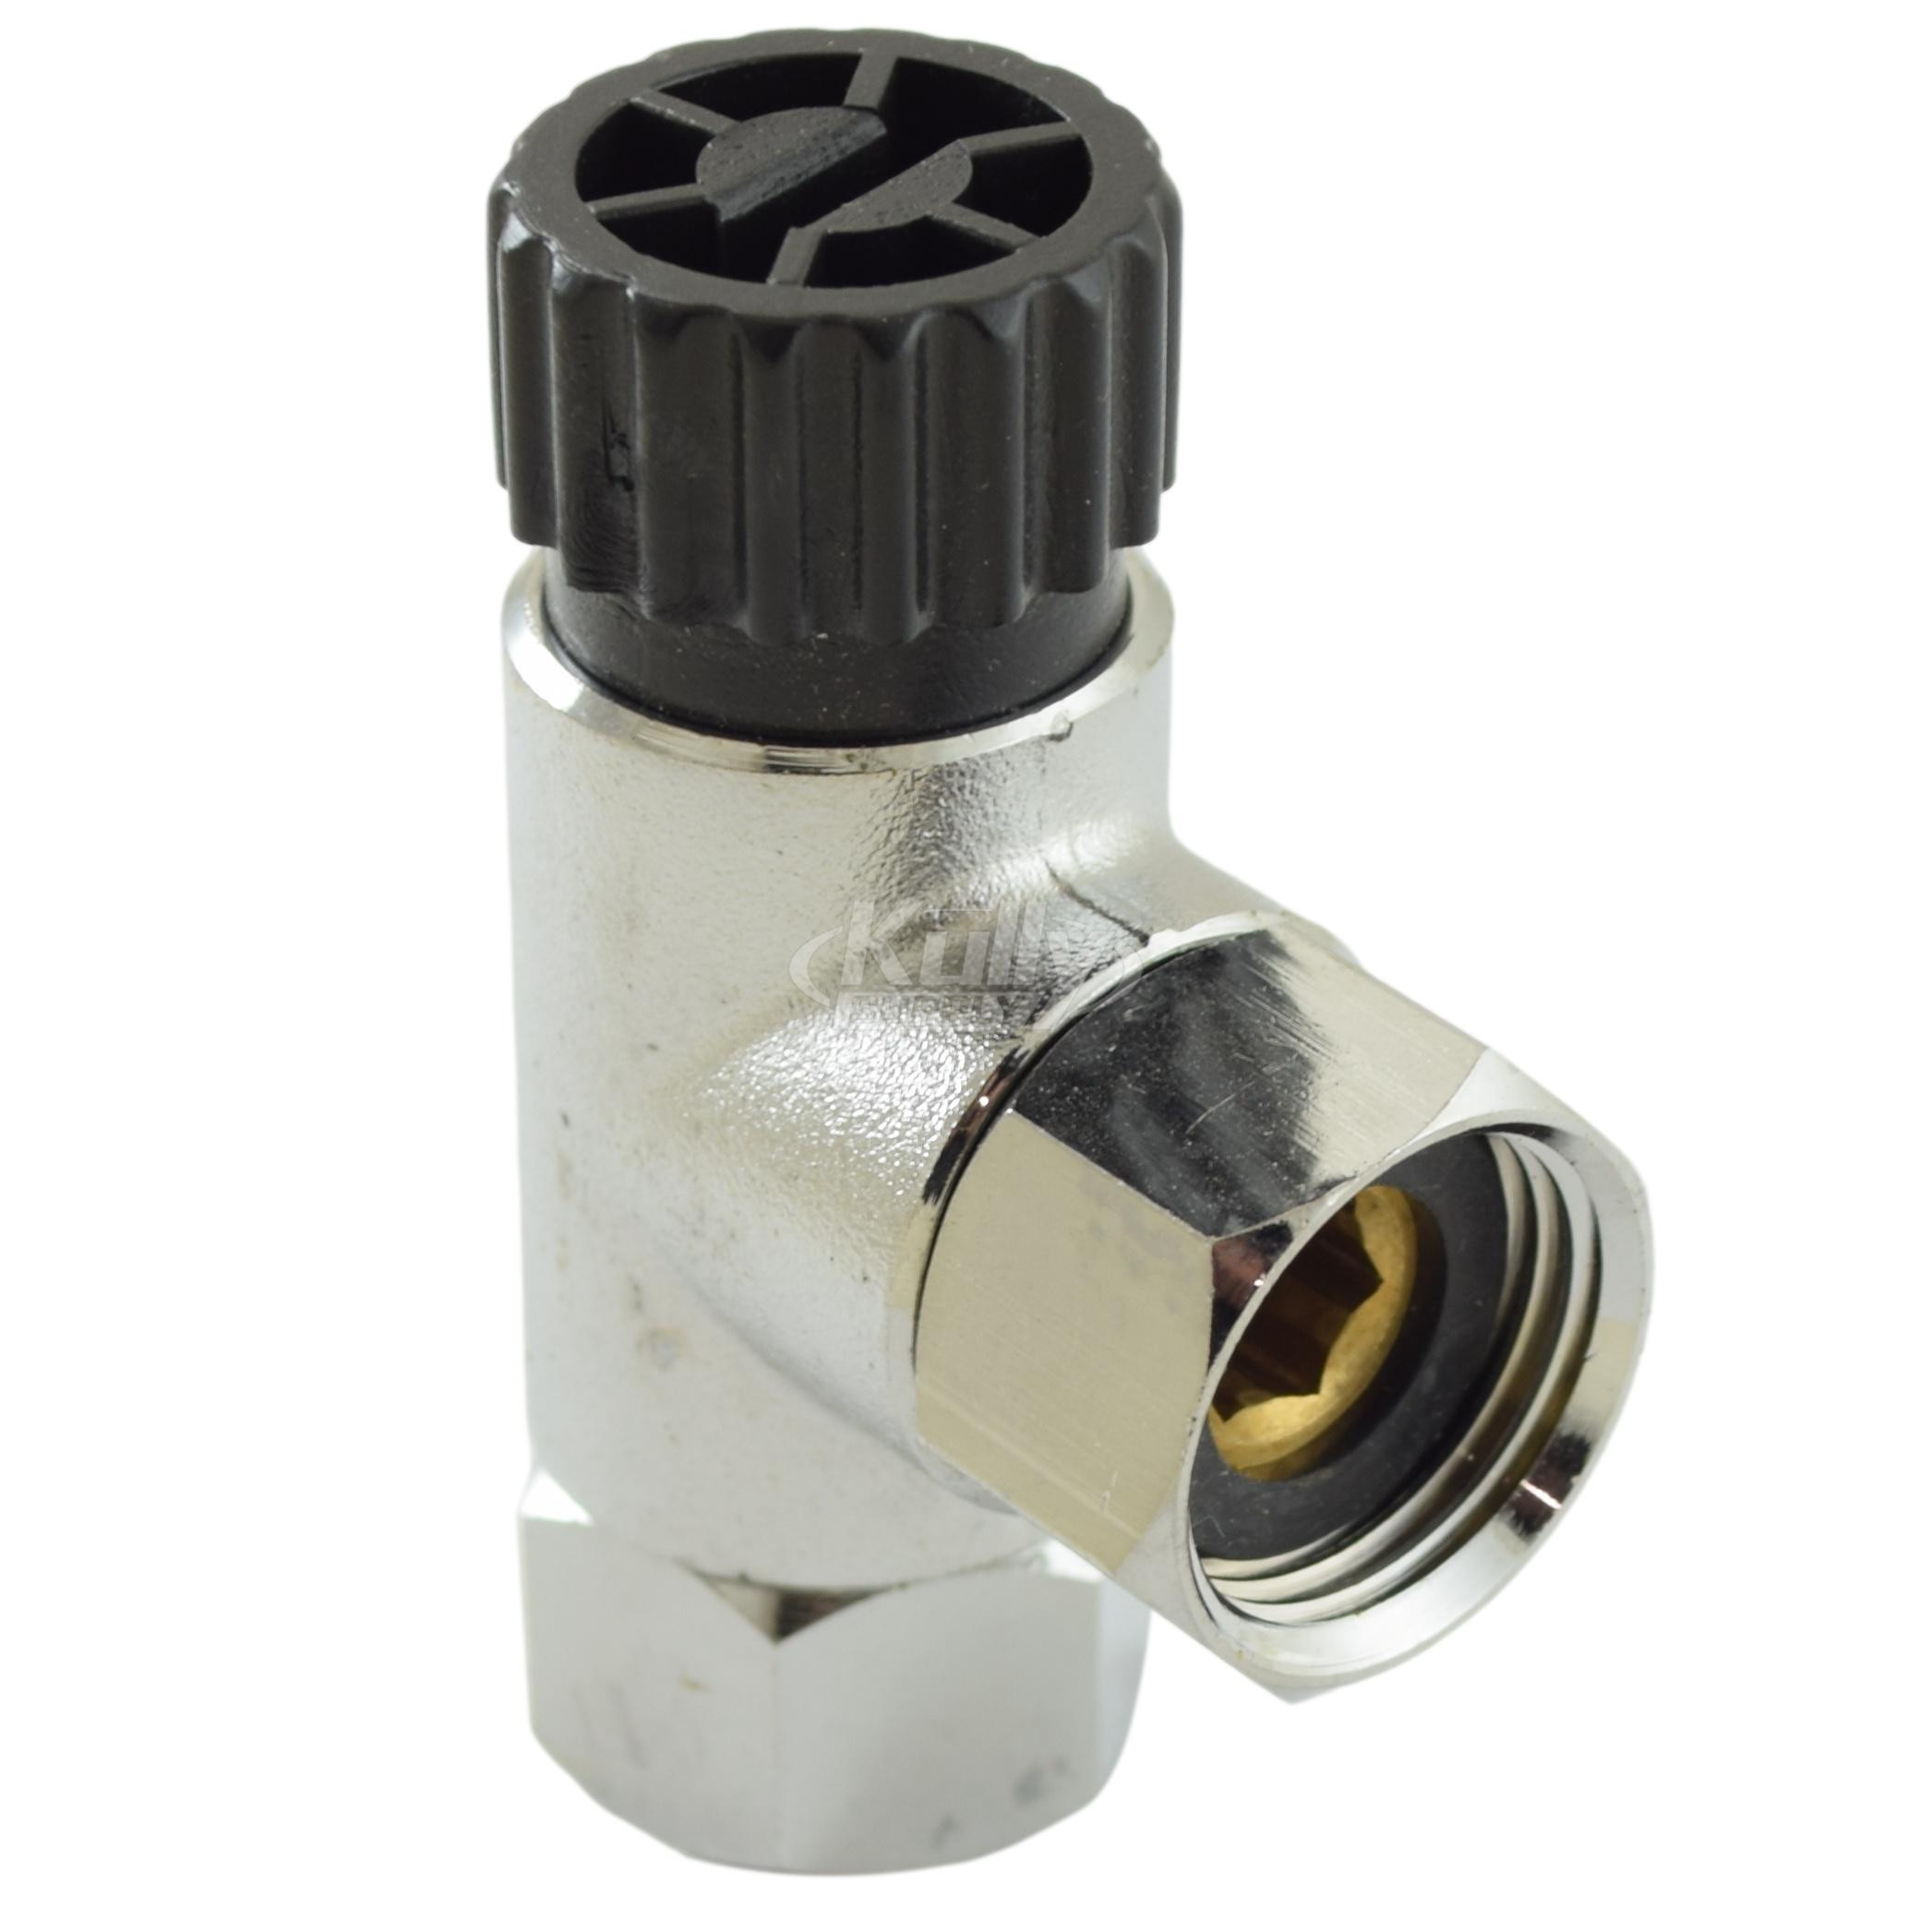 T&S Brass 019122-45 Sensor Faucet Control Module Filter Housing